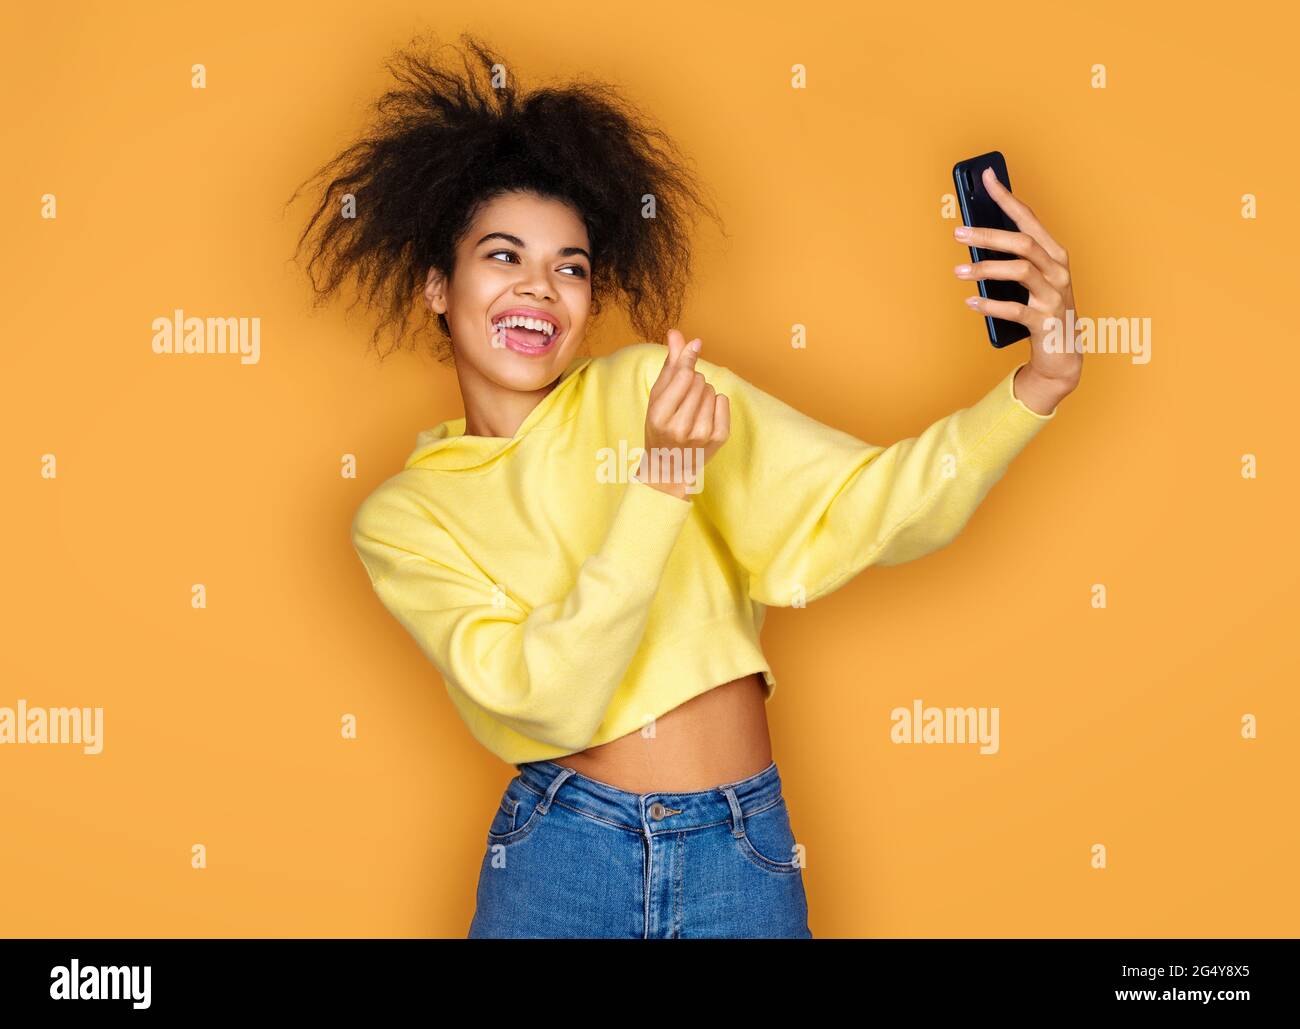 Jeune fille fait l'amour coréen signe et prend selfie photo, regardant le téléphone. Photo d'une fille afro-américaine sur fond jaune Banque D'Images